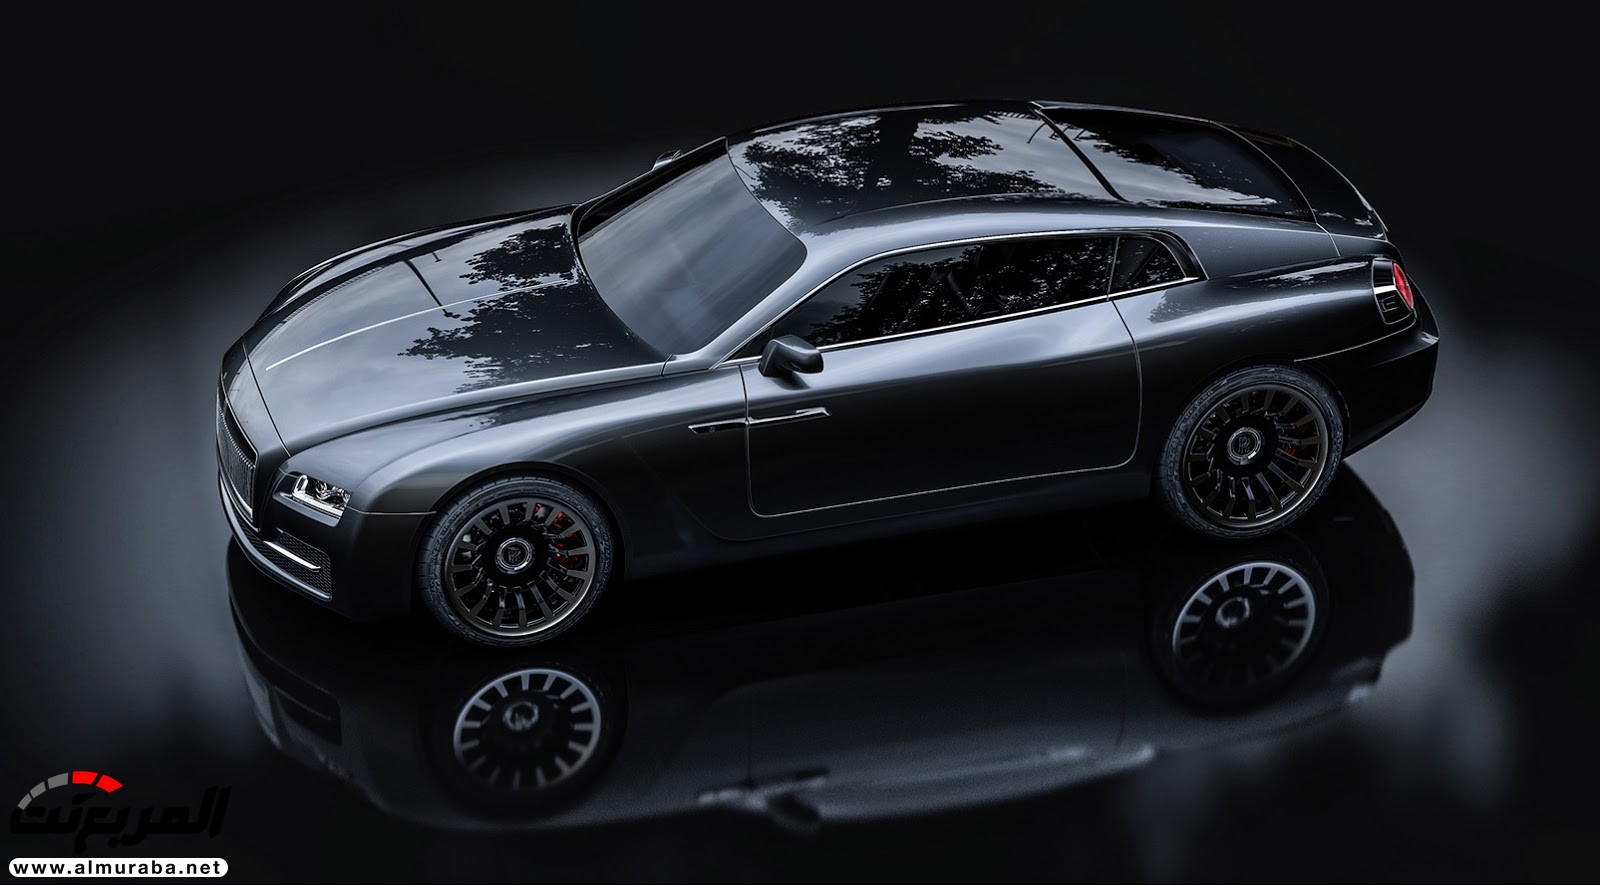 "صور افتراضية" لما يمكن أن تبدو عليه "رولز رويس" رايث كوبيه 2020 Rolls-Royce Wraith Coupe 69